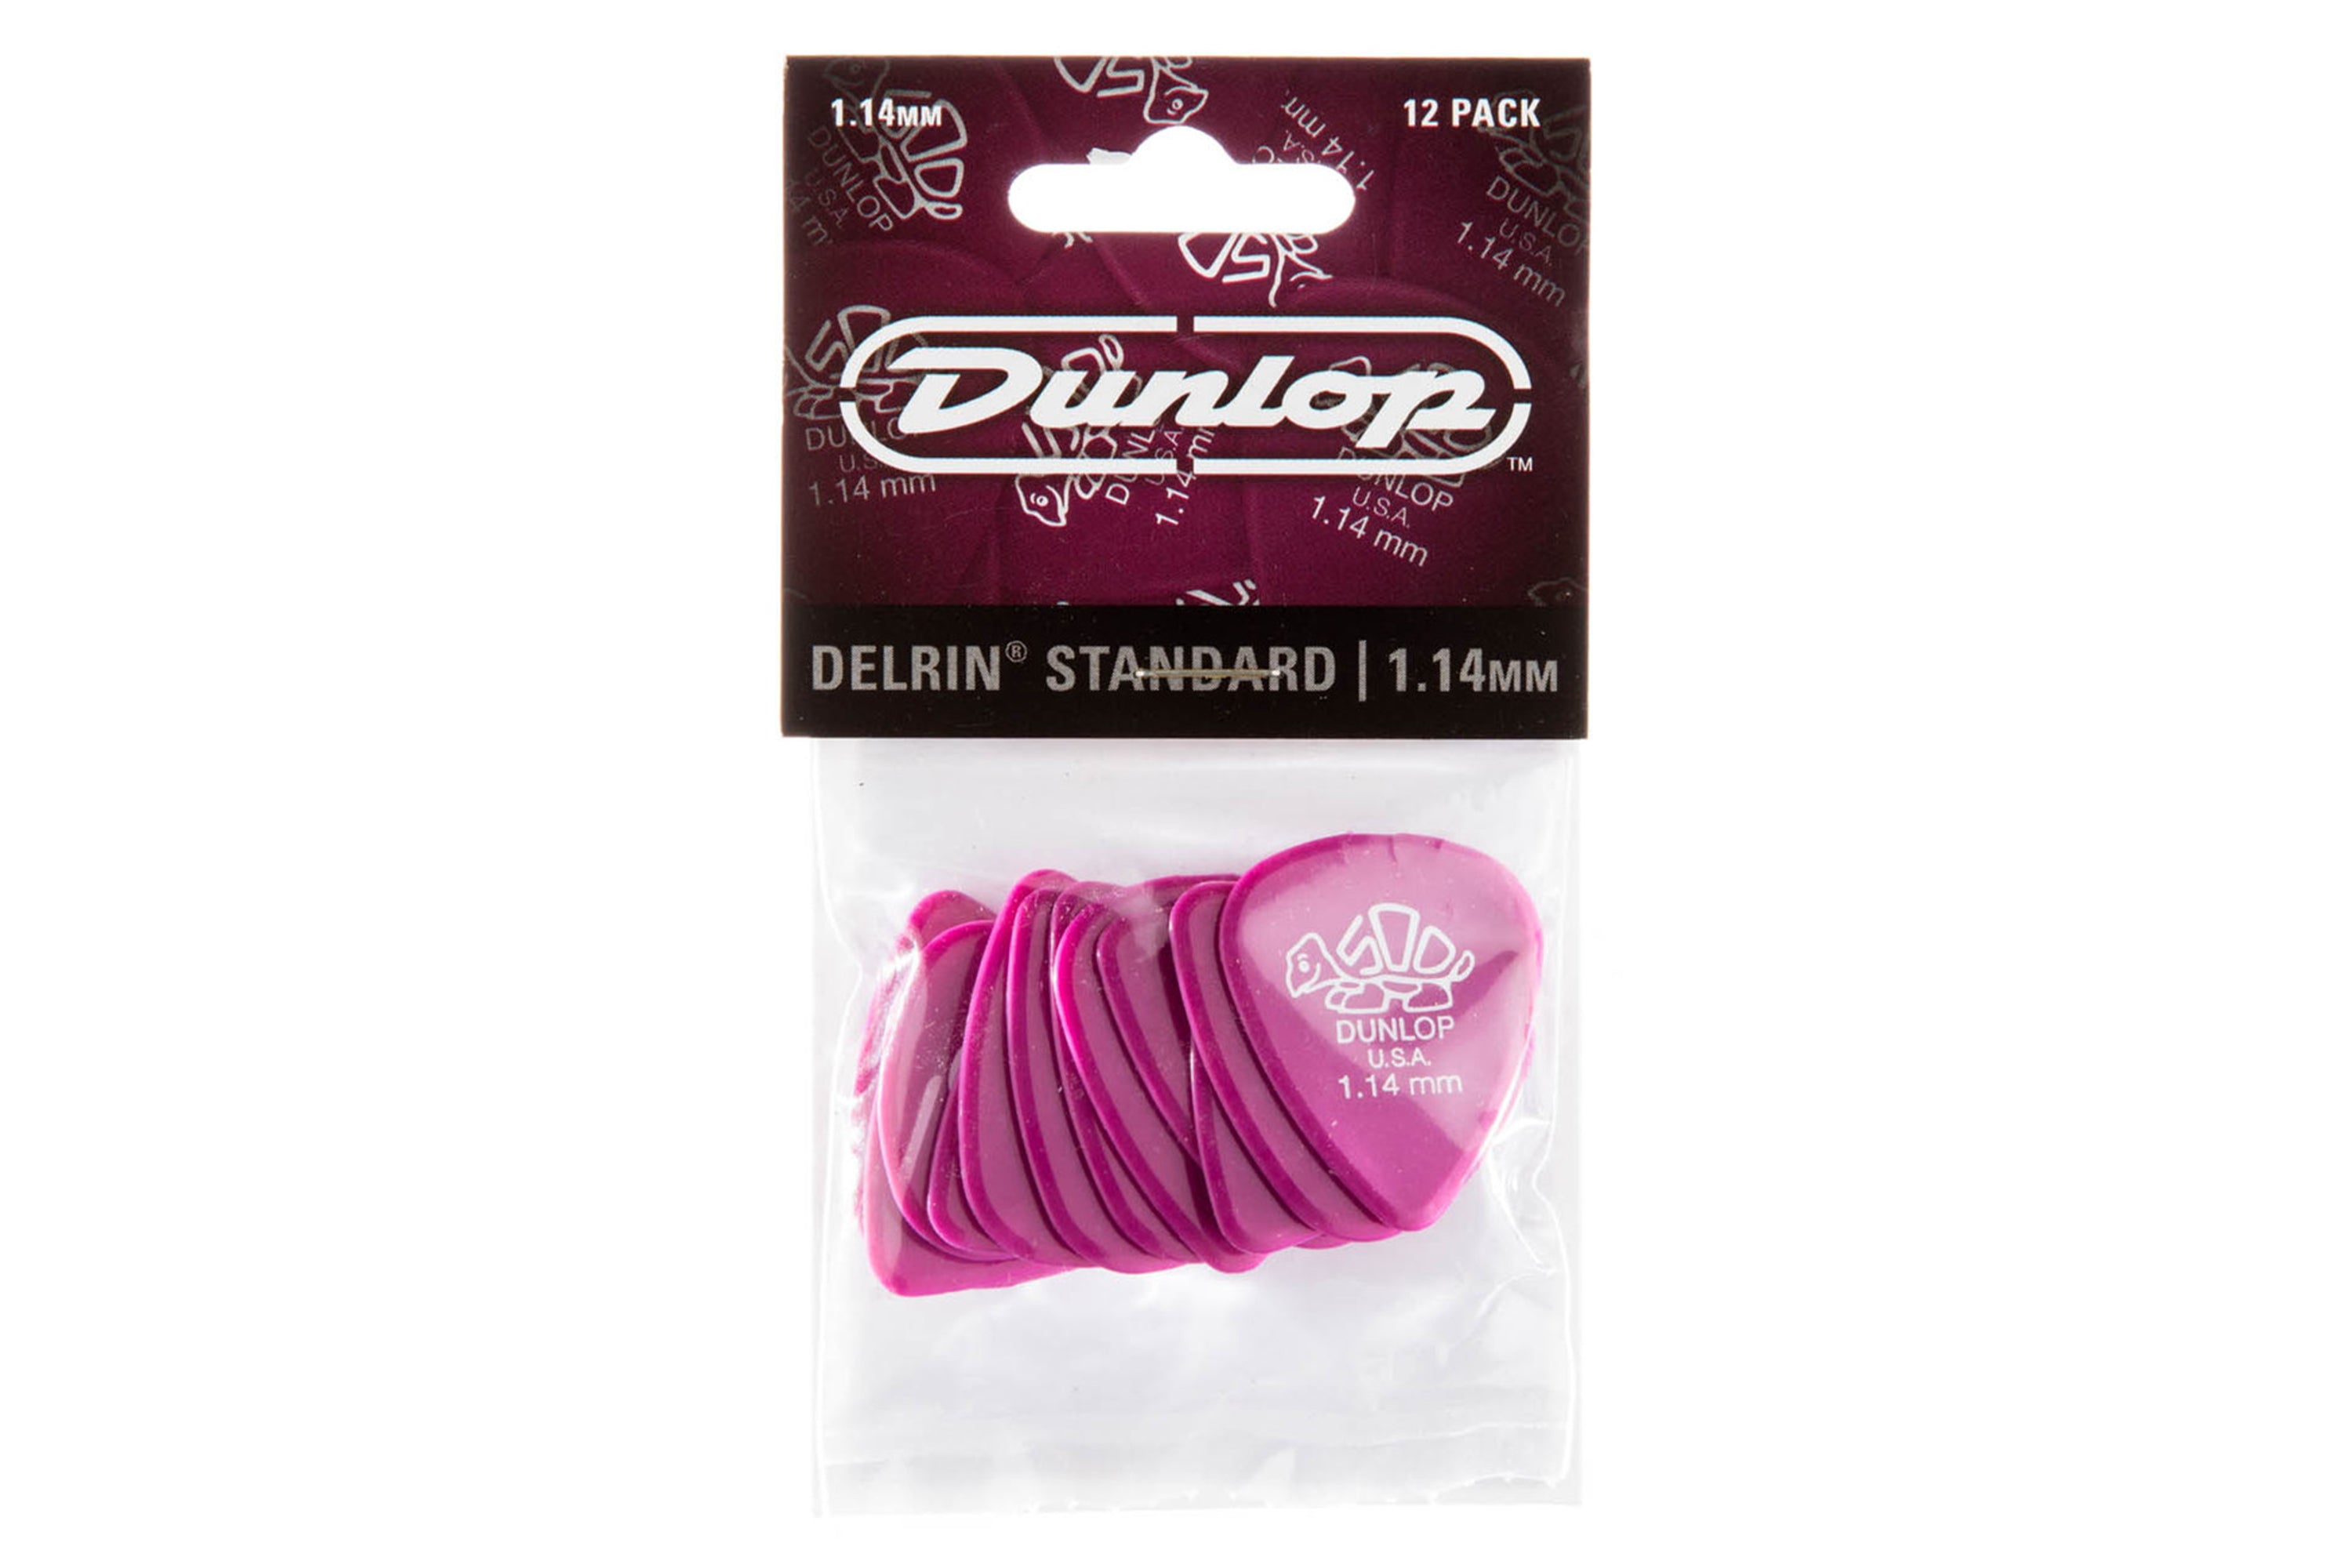 Dunlop Delrin 500 Standard 1.14mm Magenta Guitar & Ukulele Picks 12 Pack